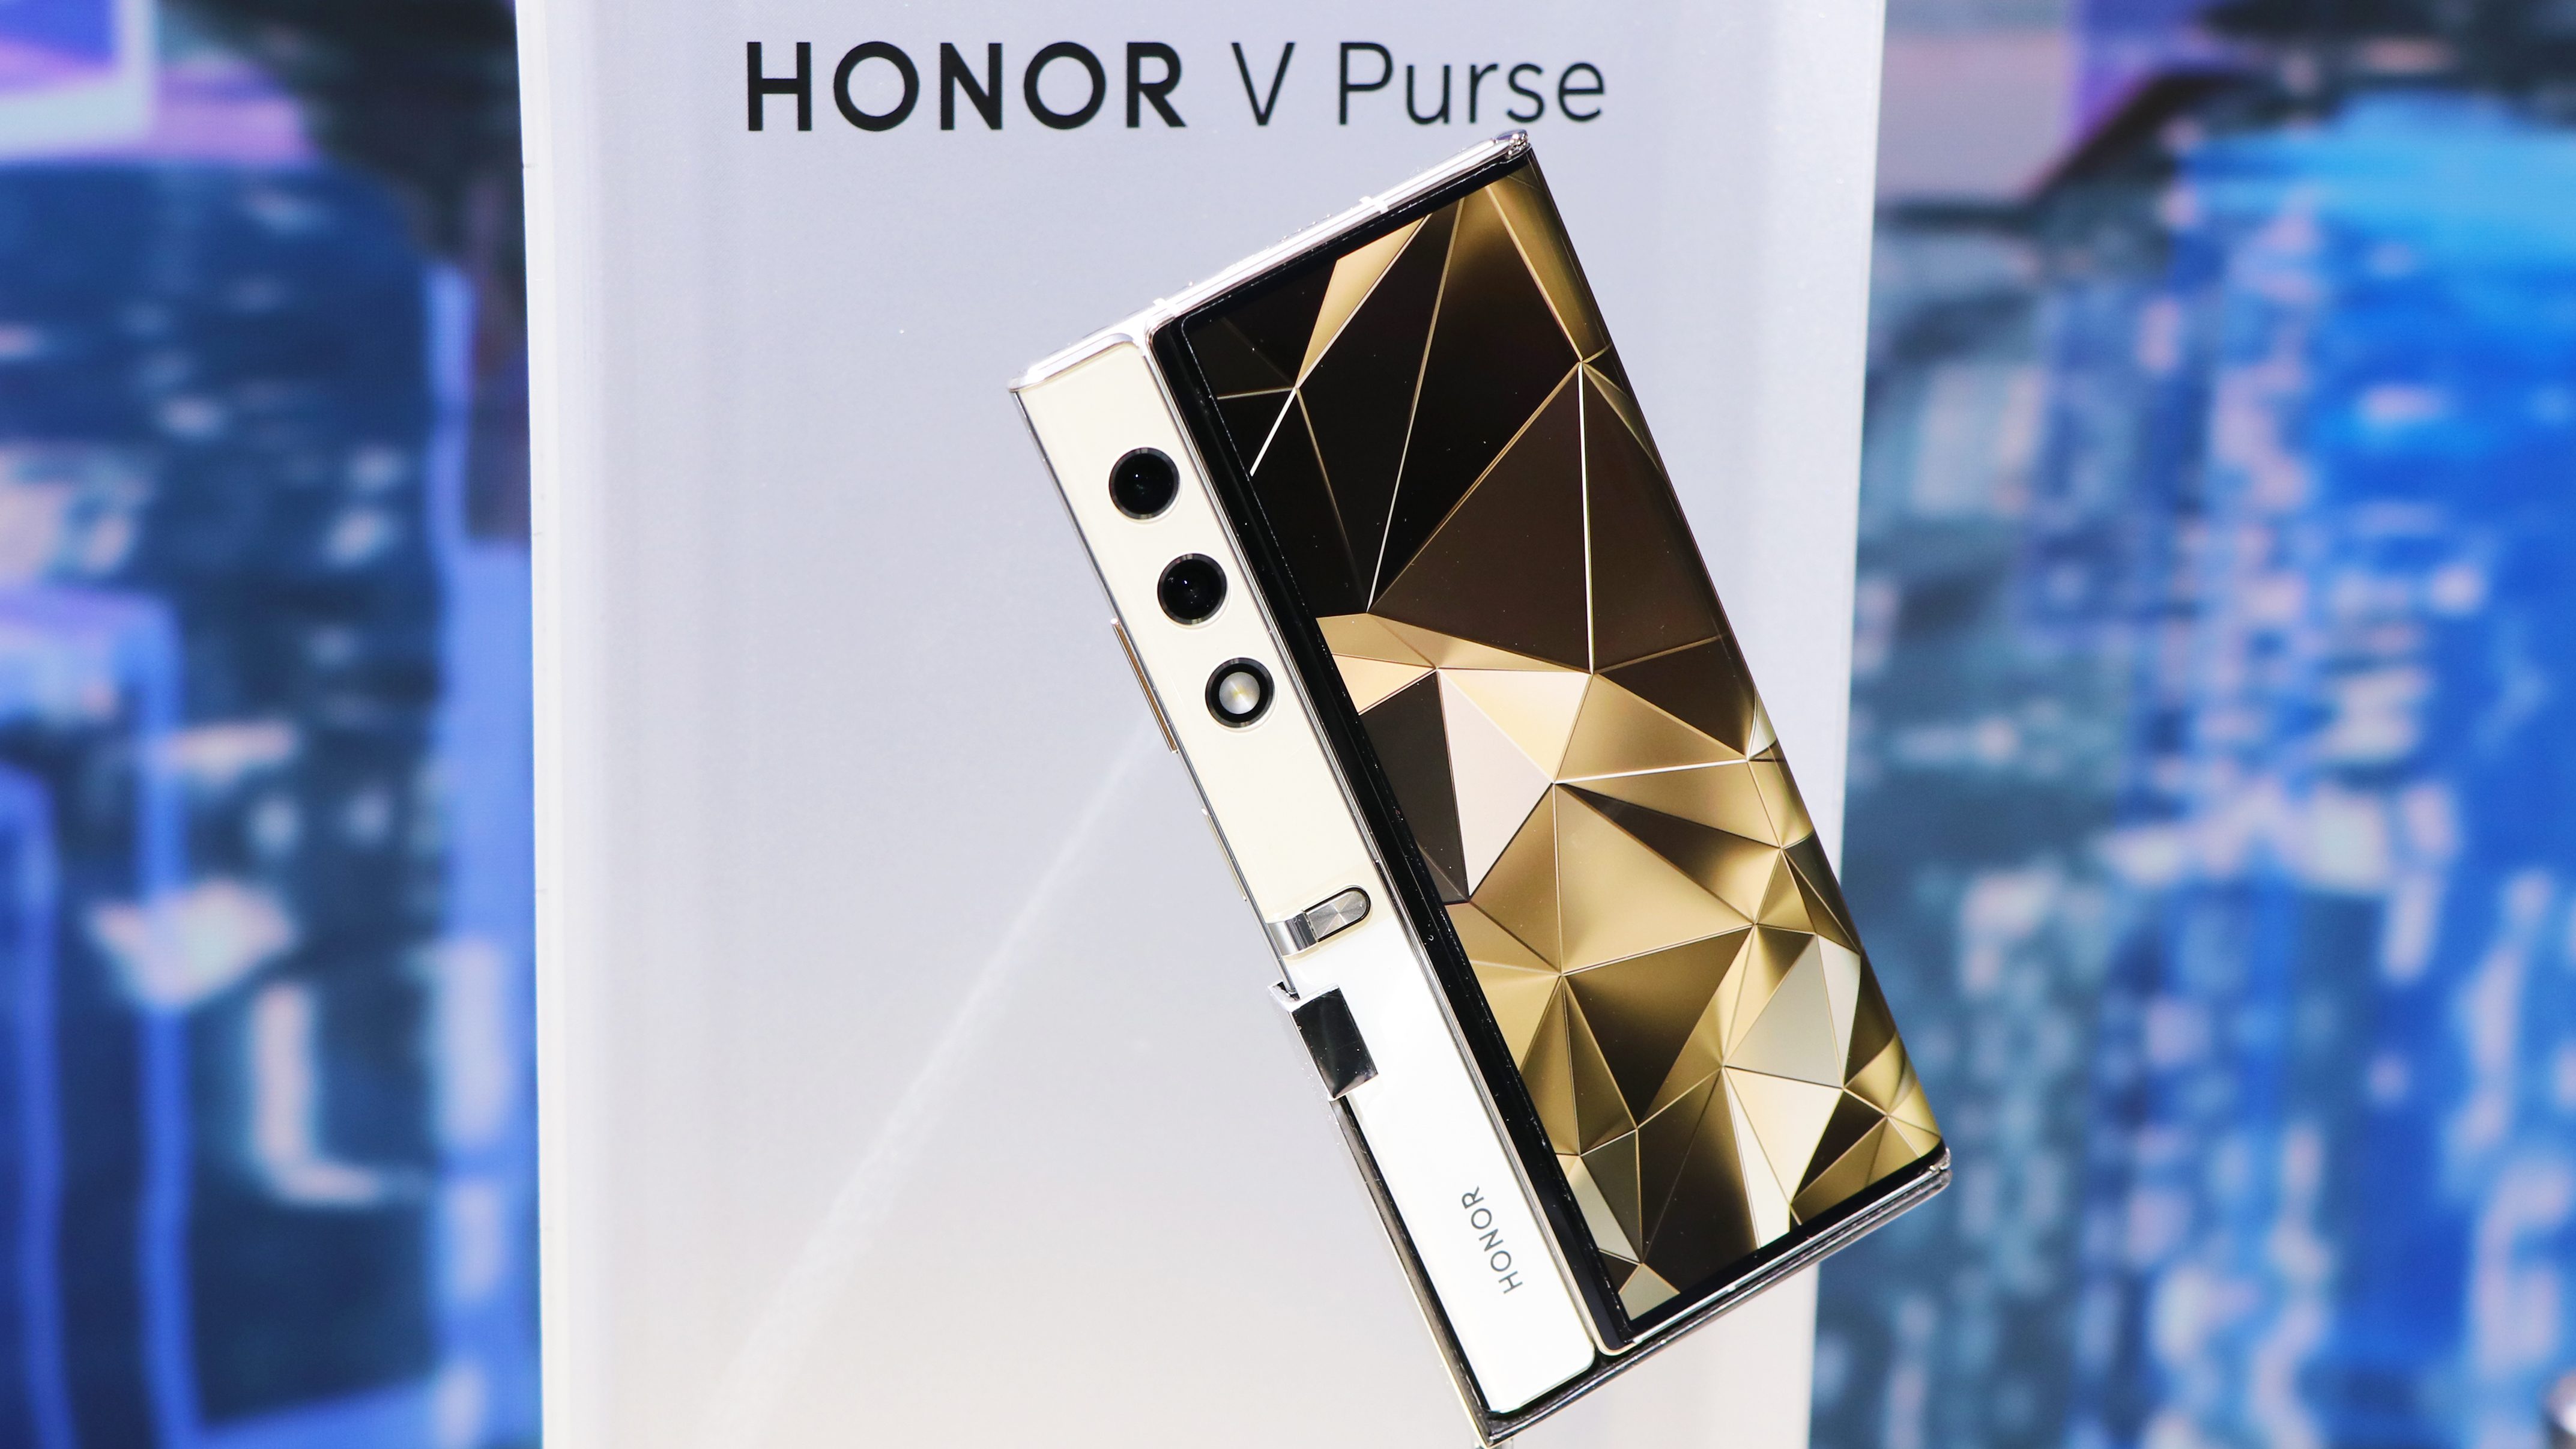 Ikke bare et konsept, men en smarttelefon i produksjon: Honor V Purse debuterer 19. september.